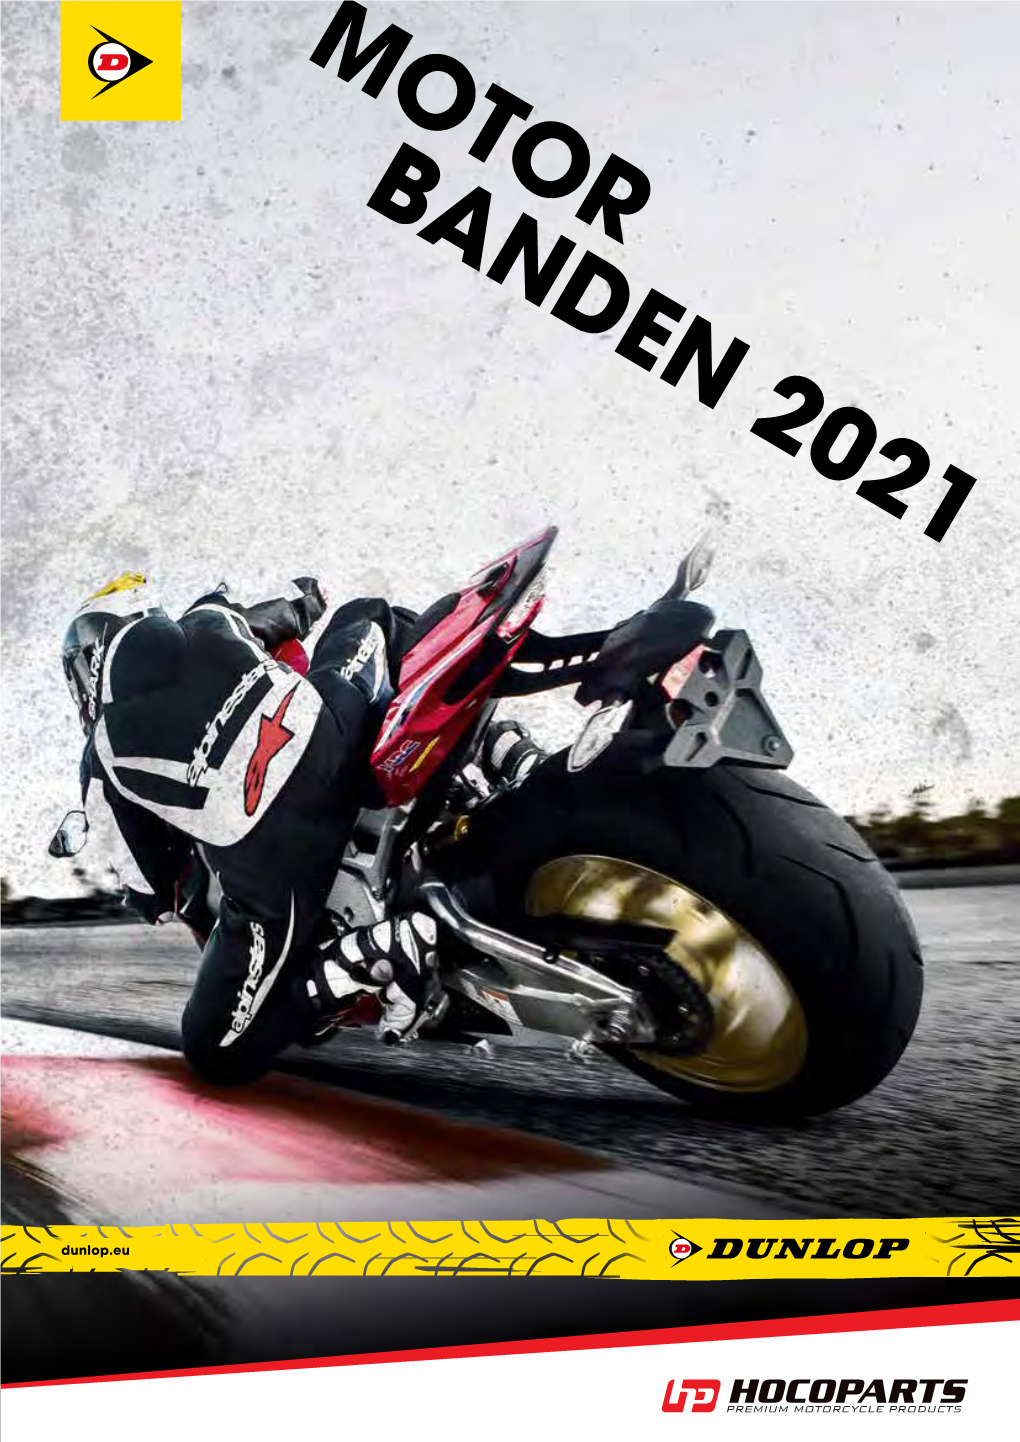 Motorbanden 2021